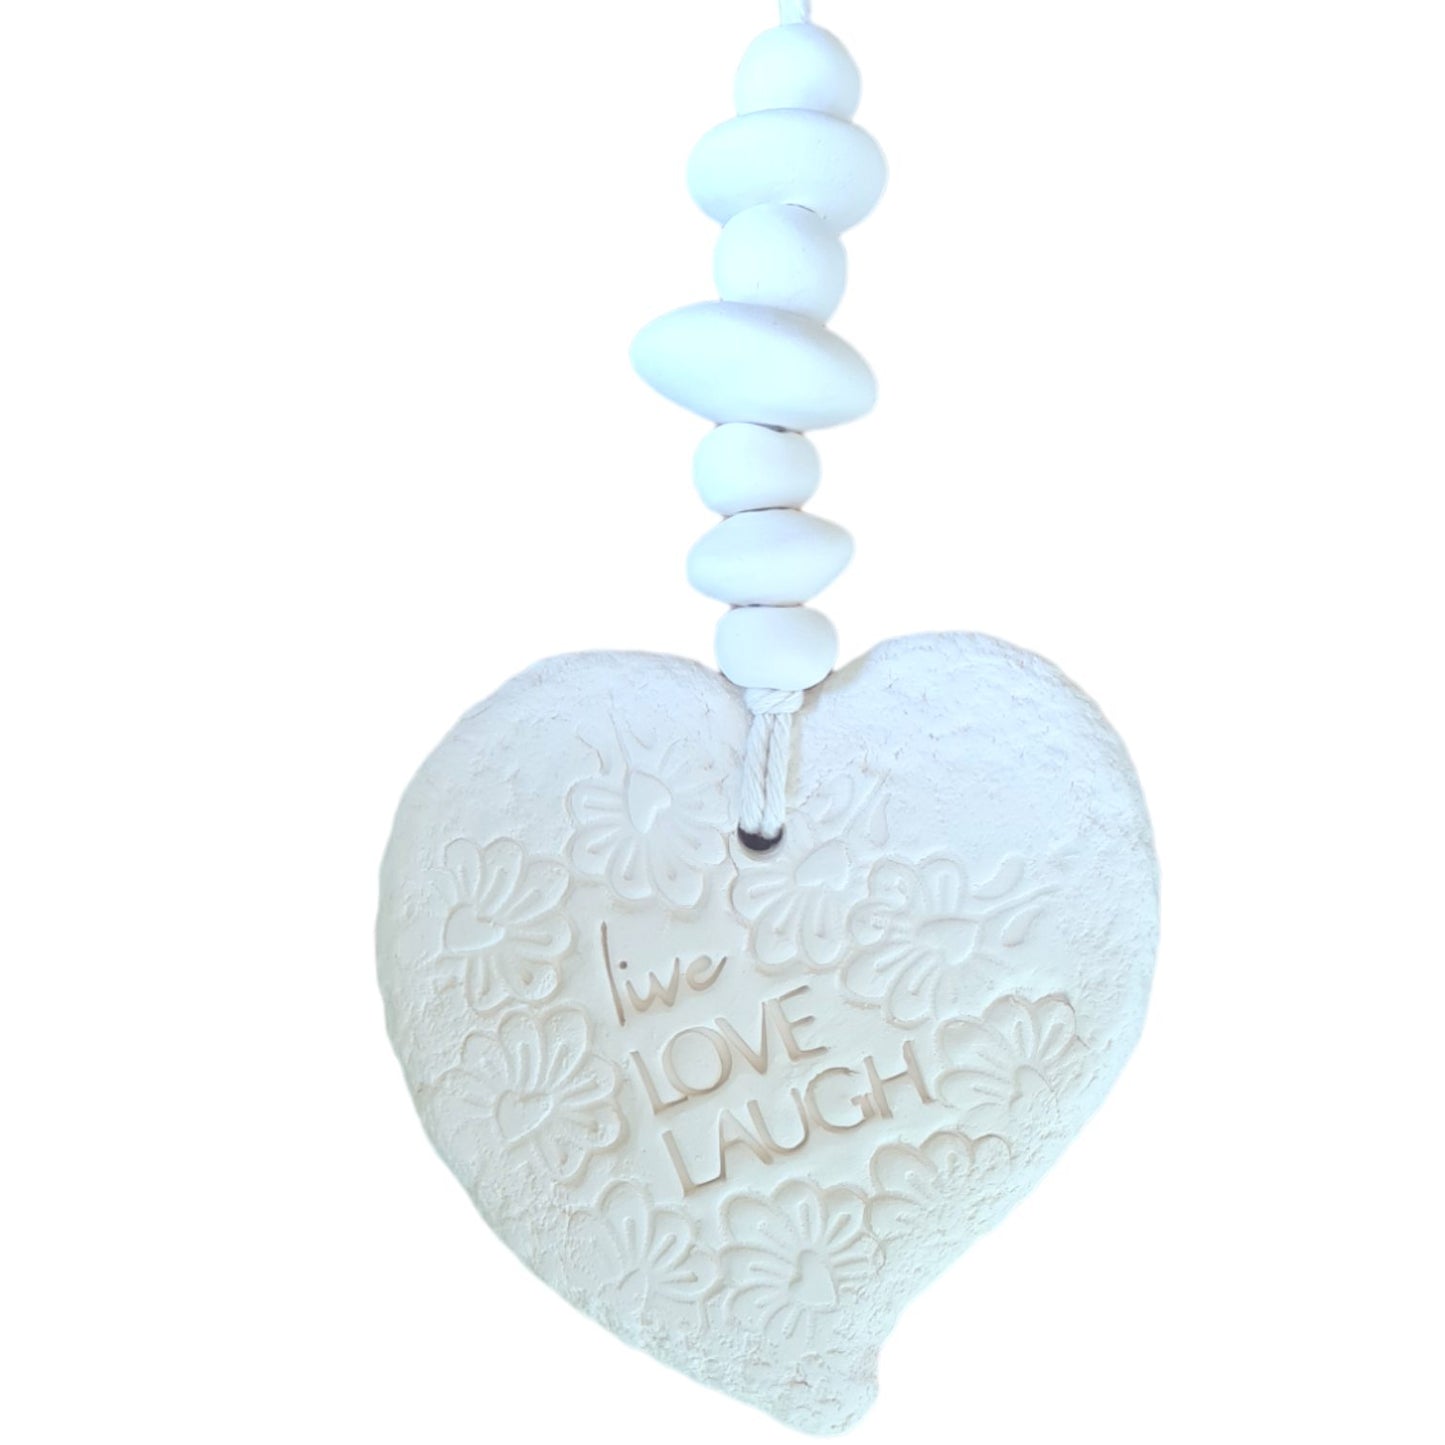 Fragranced Ceramic Hearts - Mojo's Fragranced Ceramic Hearts - Large - "Live, Love, Laugh"